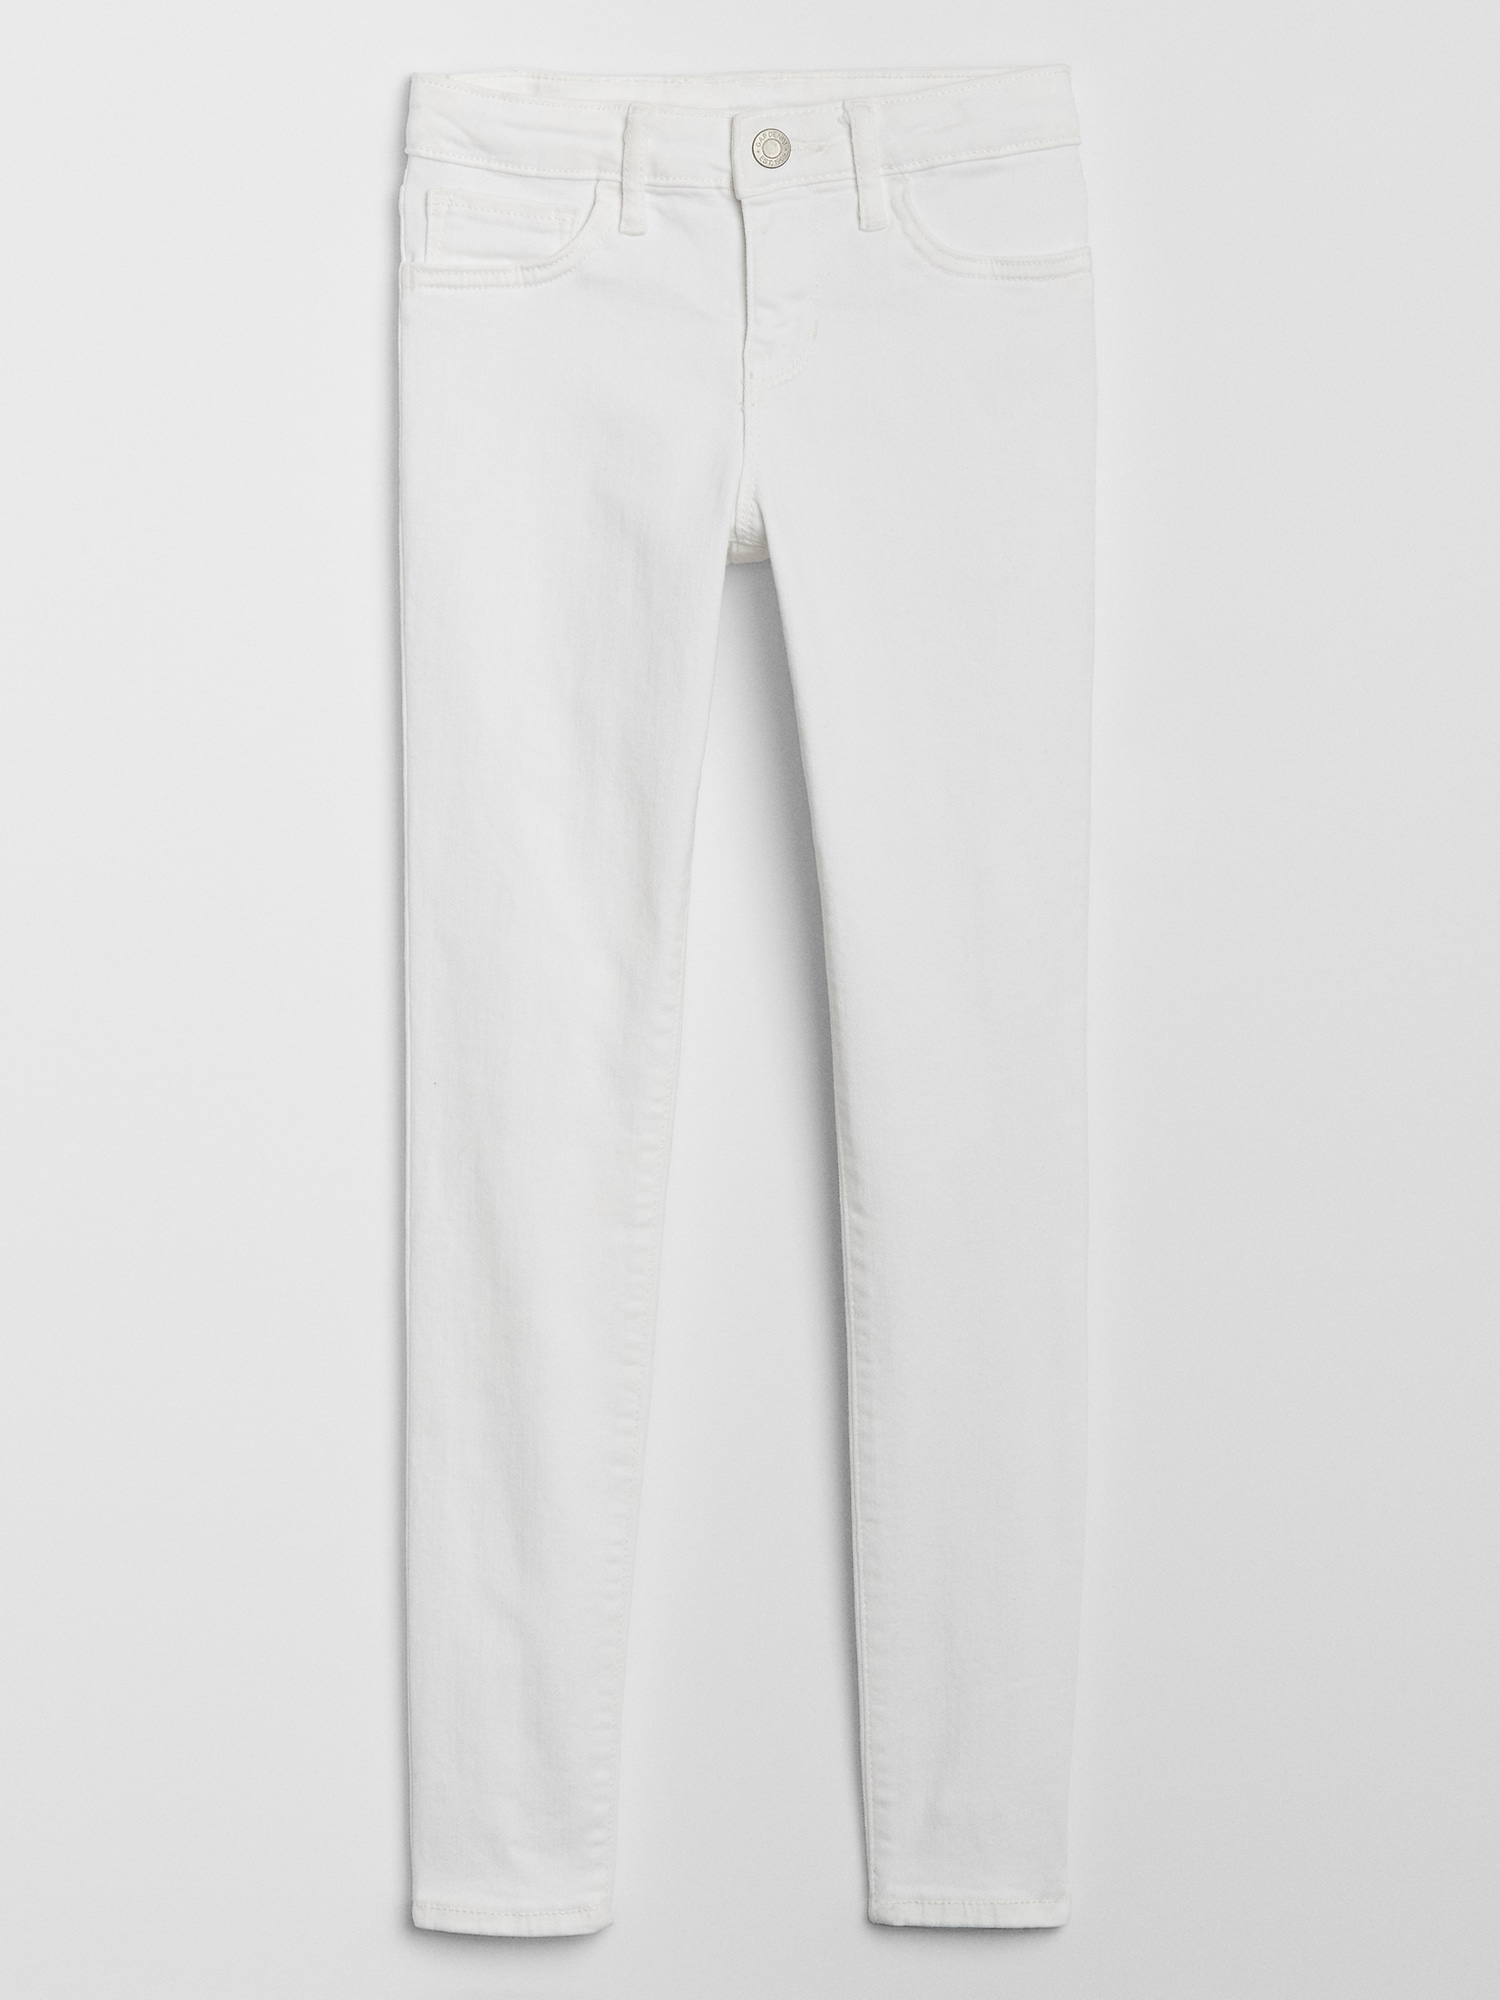 gap kids white jeans